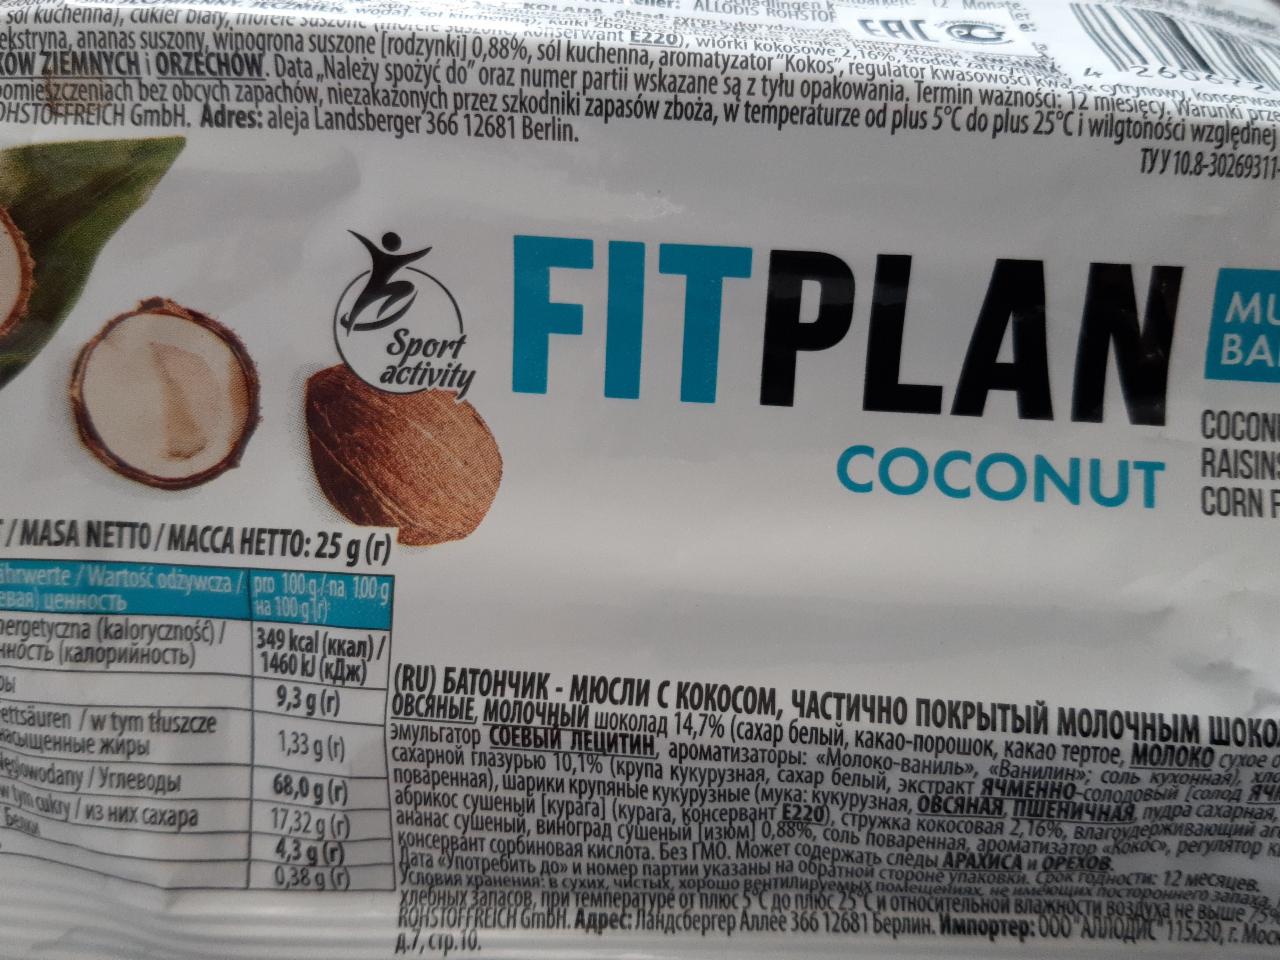 Фото - батончик-мюсли с кокосом, частично покрытый молочным шоколадом coconut FITPLAN